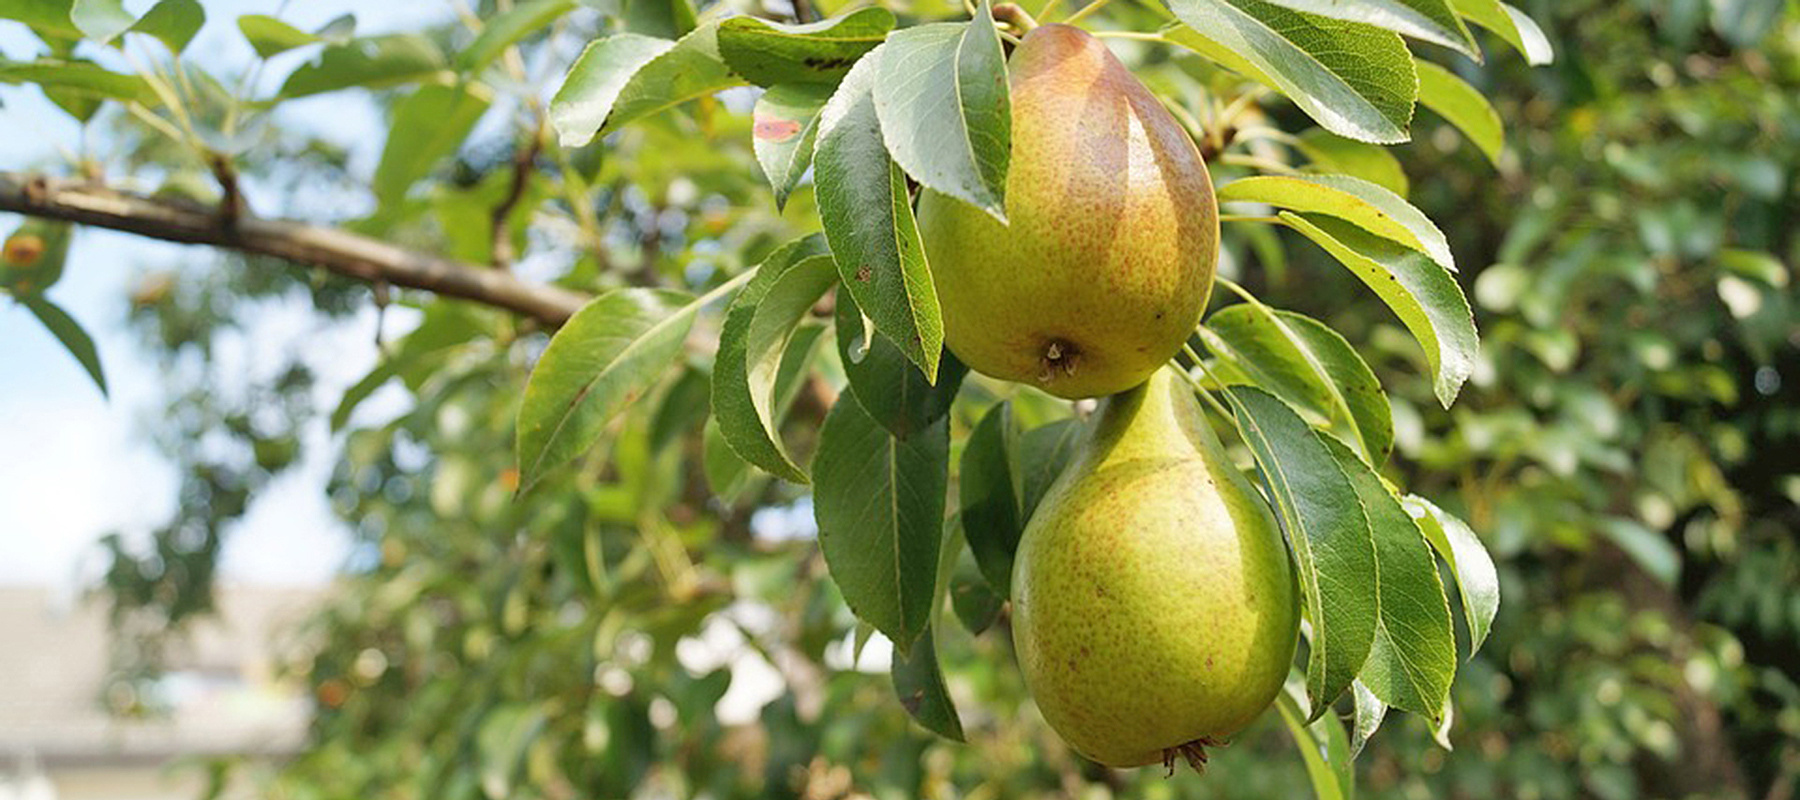 pears-1639117_960_720.jpg